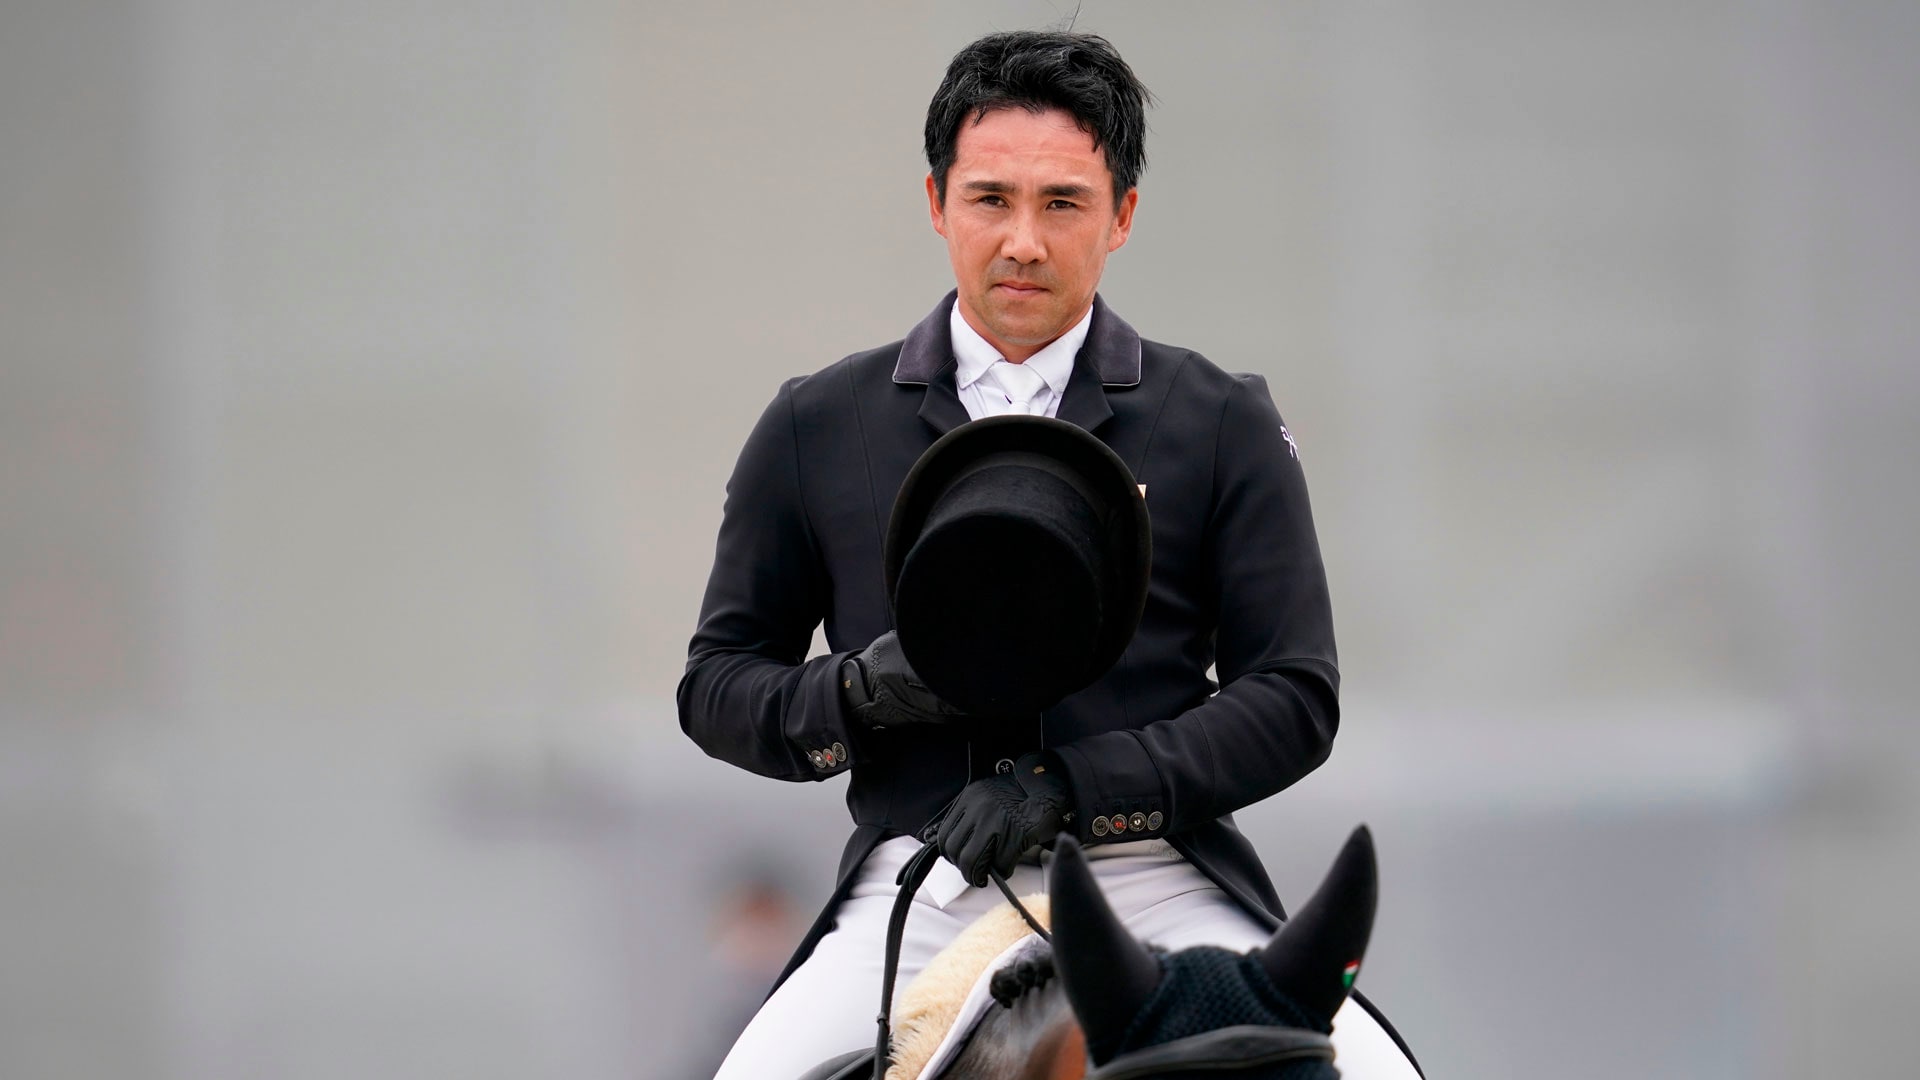 来年6月の大会を参考に監督が決定 馬場馬術 東京五輪の人馬選考基準が改定